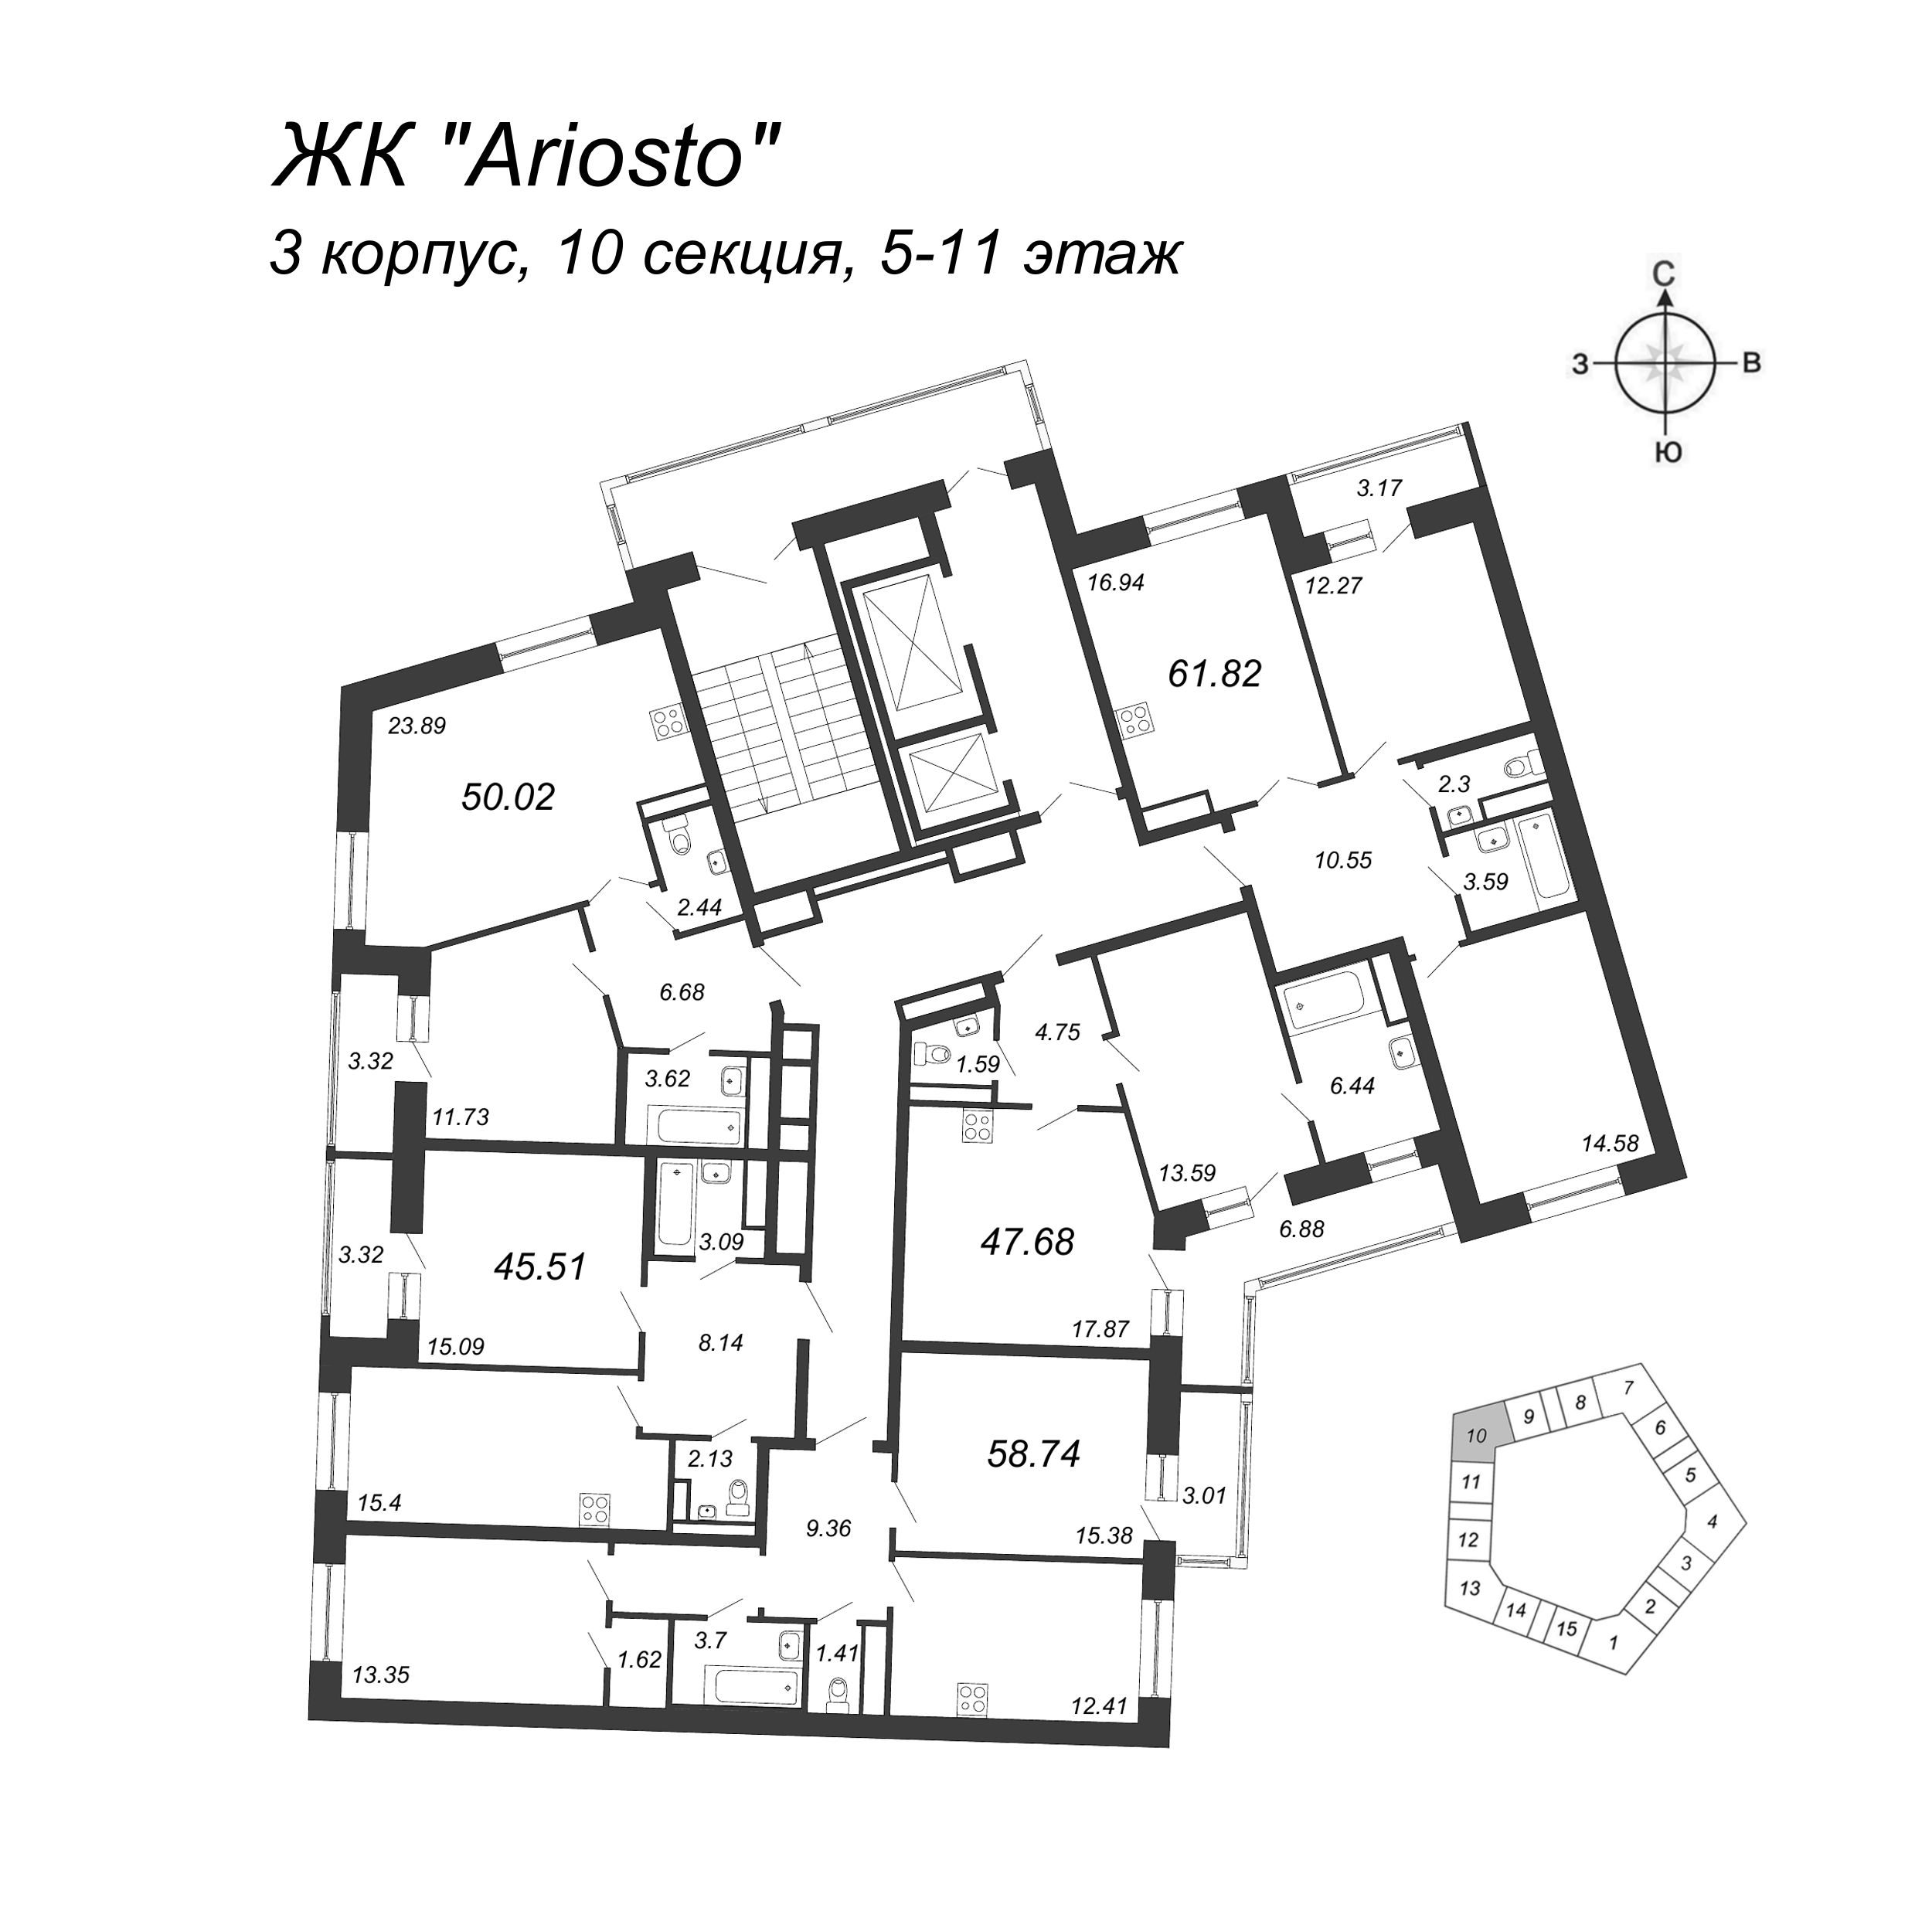 2-комнатная (Евро) квартира, 45.51 м² в ЖК "Ariosto" - планировка этажа